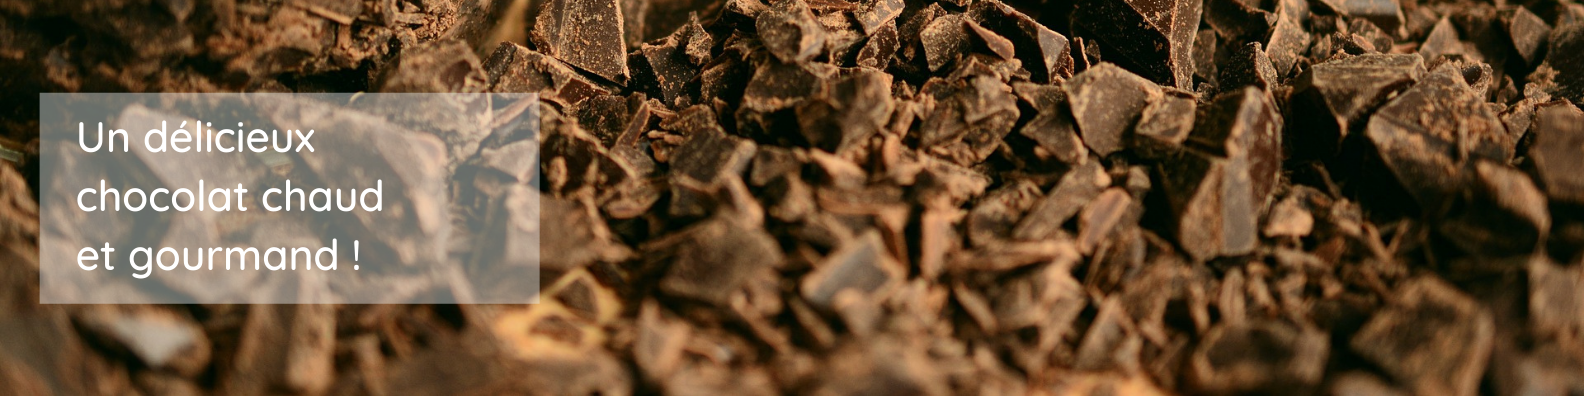 neolid - bannière - Un délicieux chocolat chaud et gourmand !